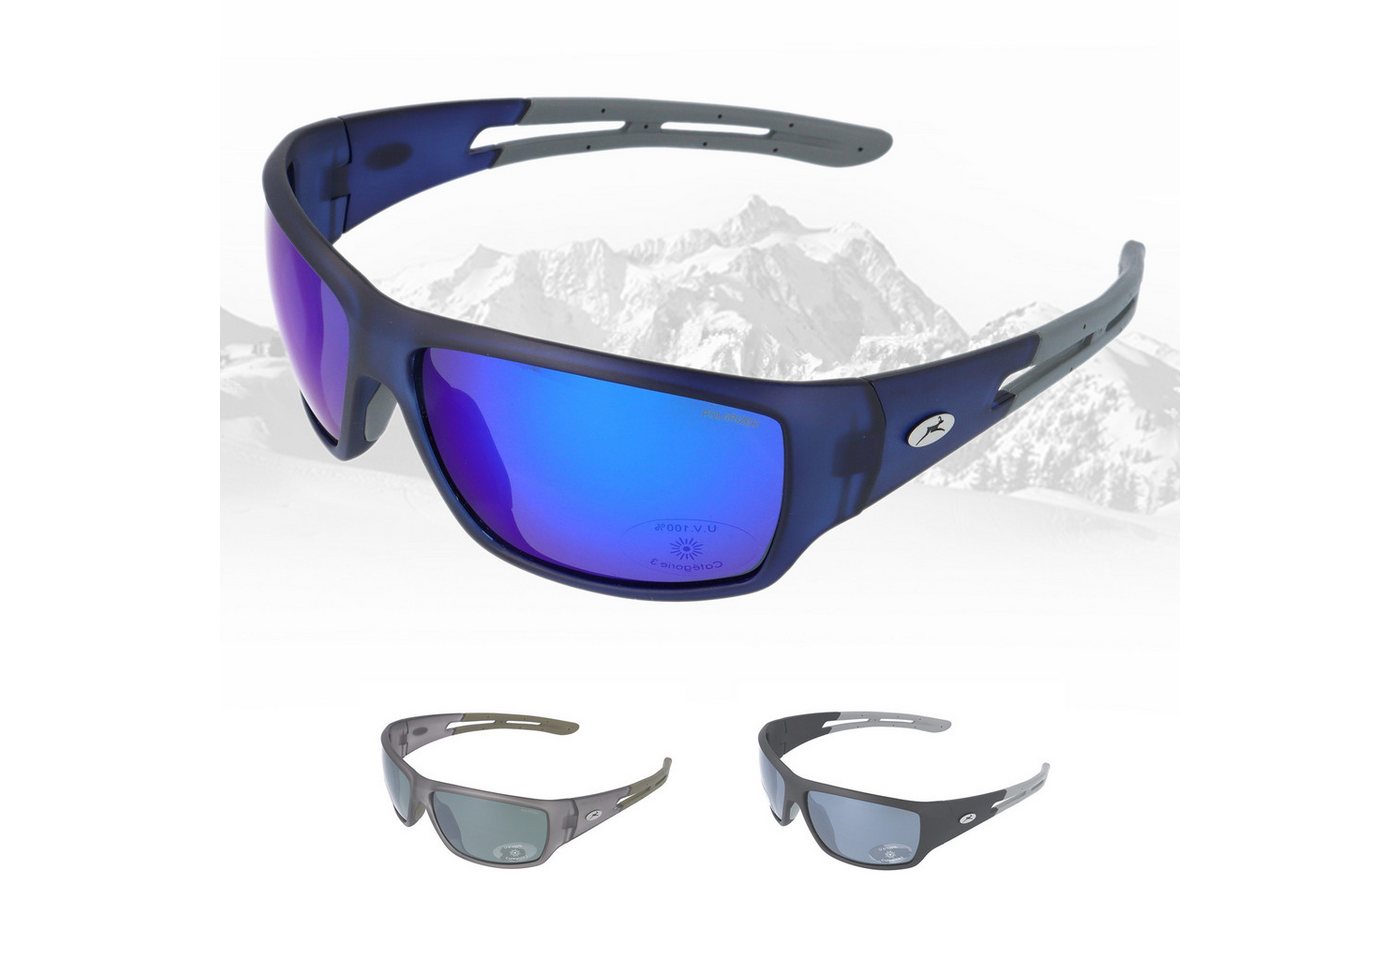 Gamswild Skibrille UV400 Sonnenbrille Fahrradbrille breite Bügel/winddicht Damen, Herren Modell WS7127 in schwarz, grau, blau von Gamswild